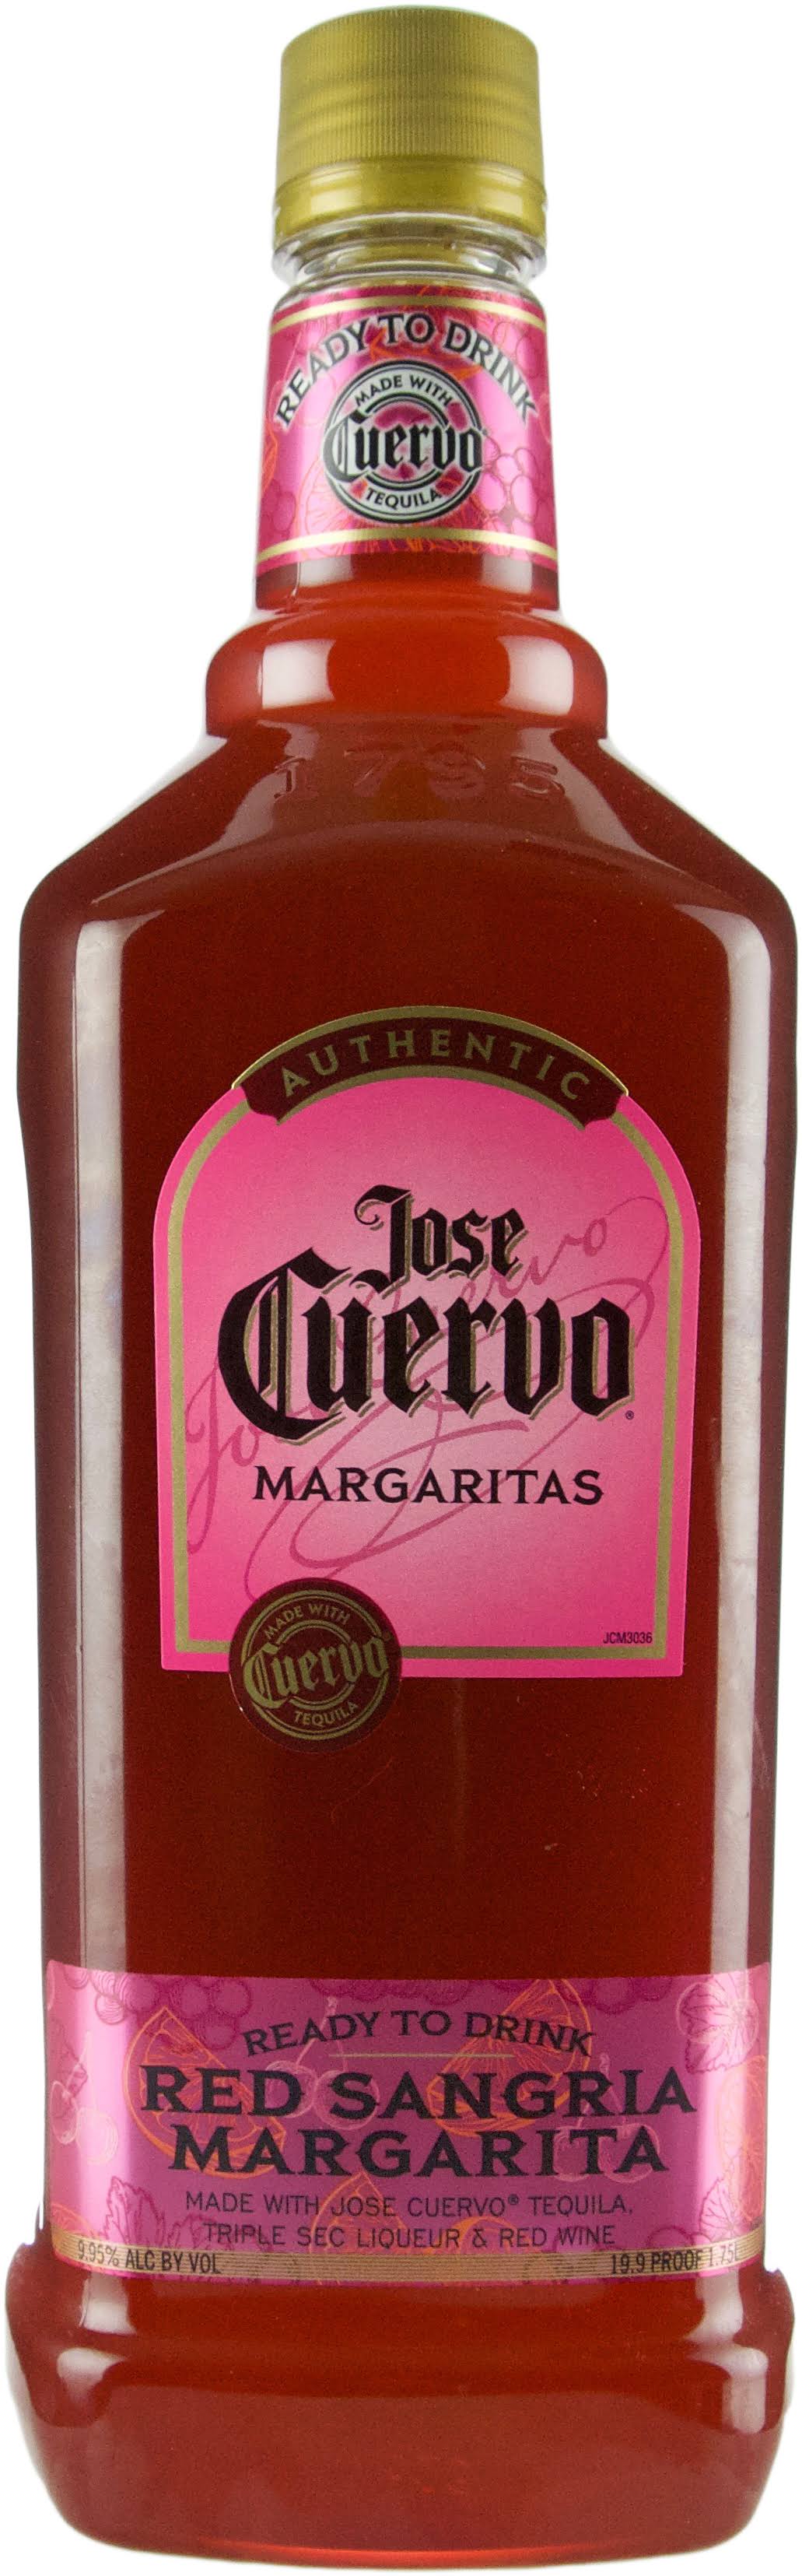 Jose Cuervo Red Sangria, Margarita - 1.75 l